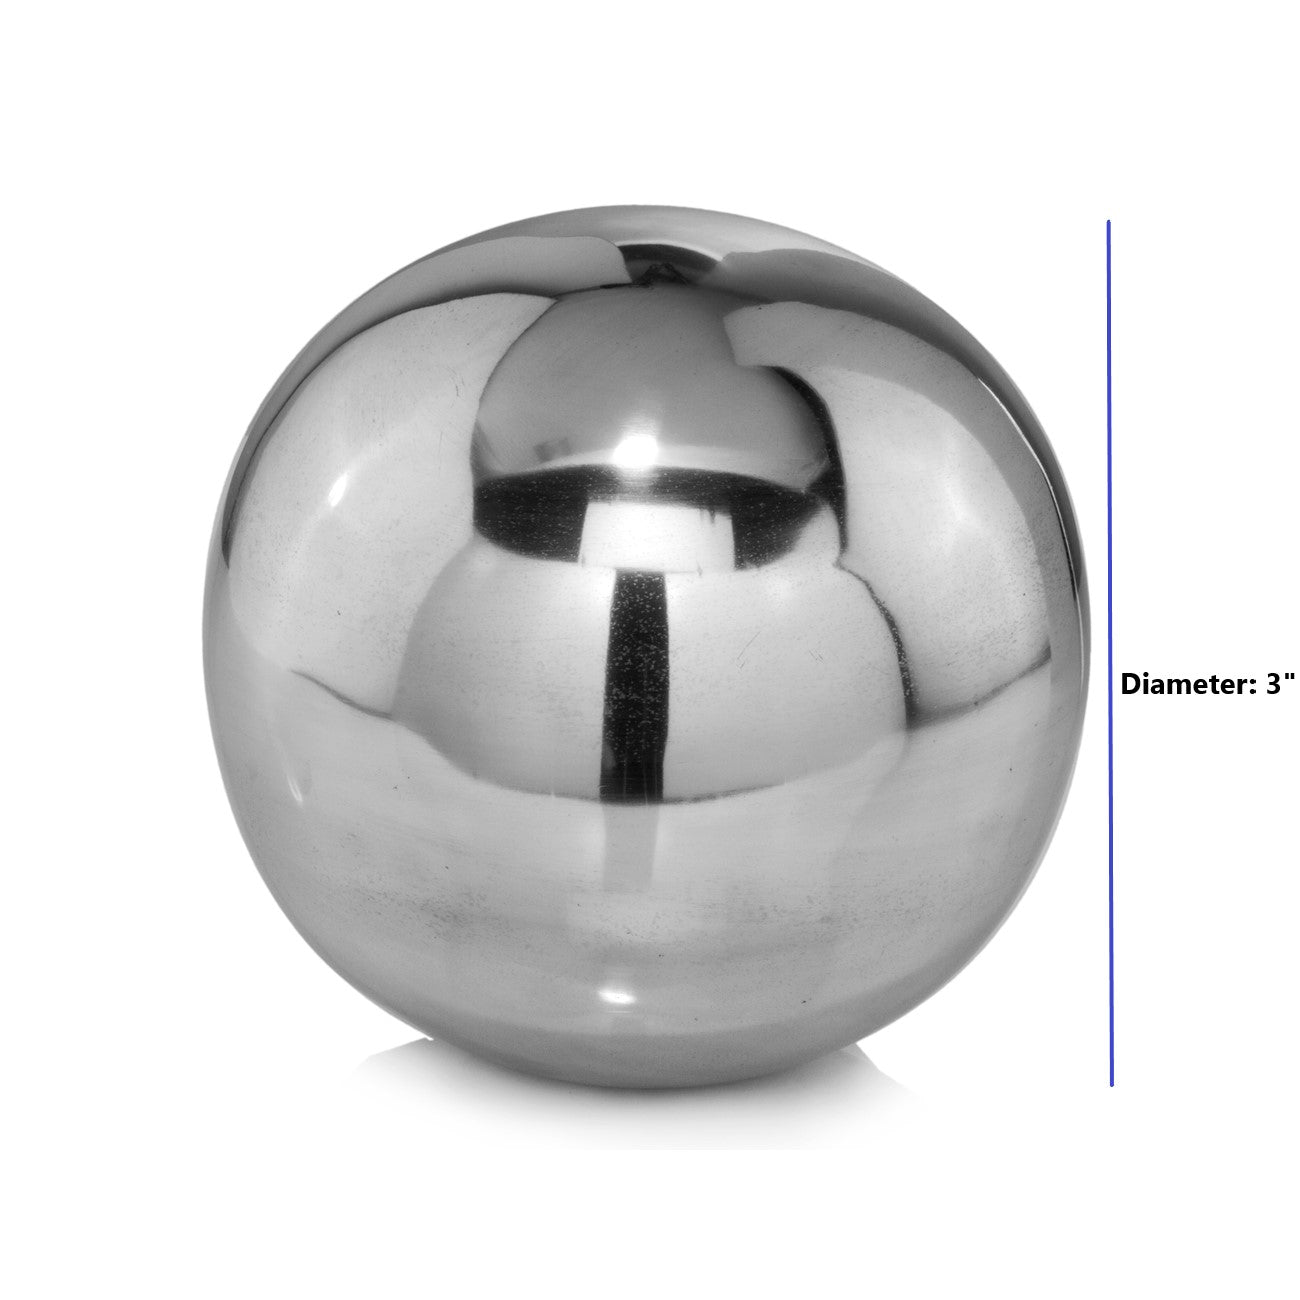 Shiny Polished Aluminum Spheres Set of Two